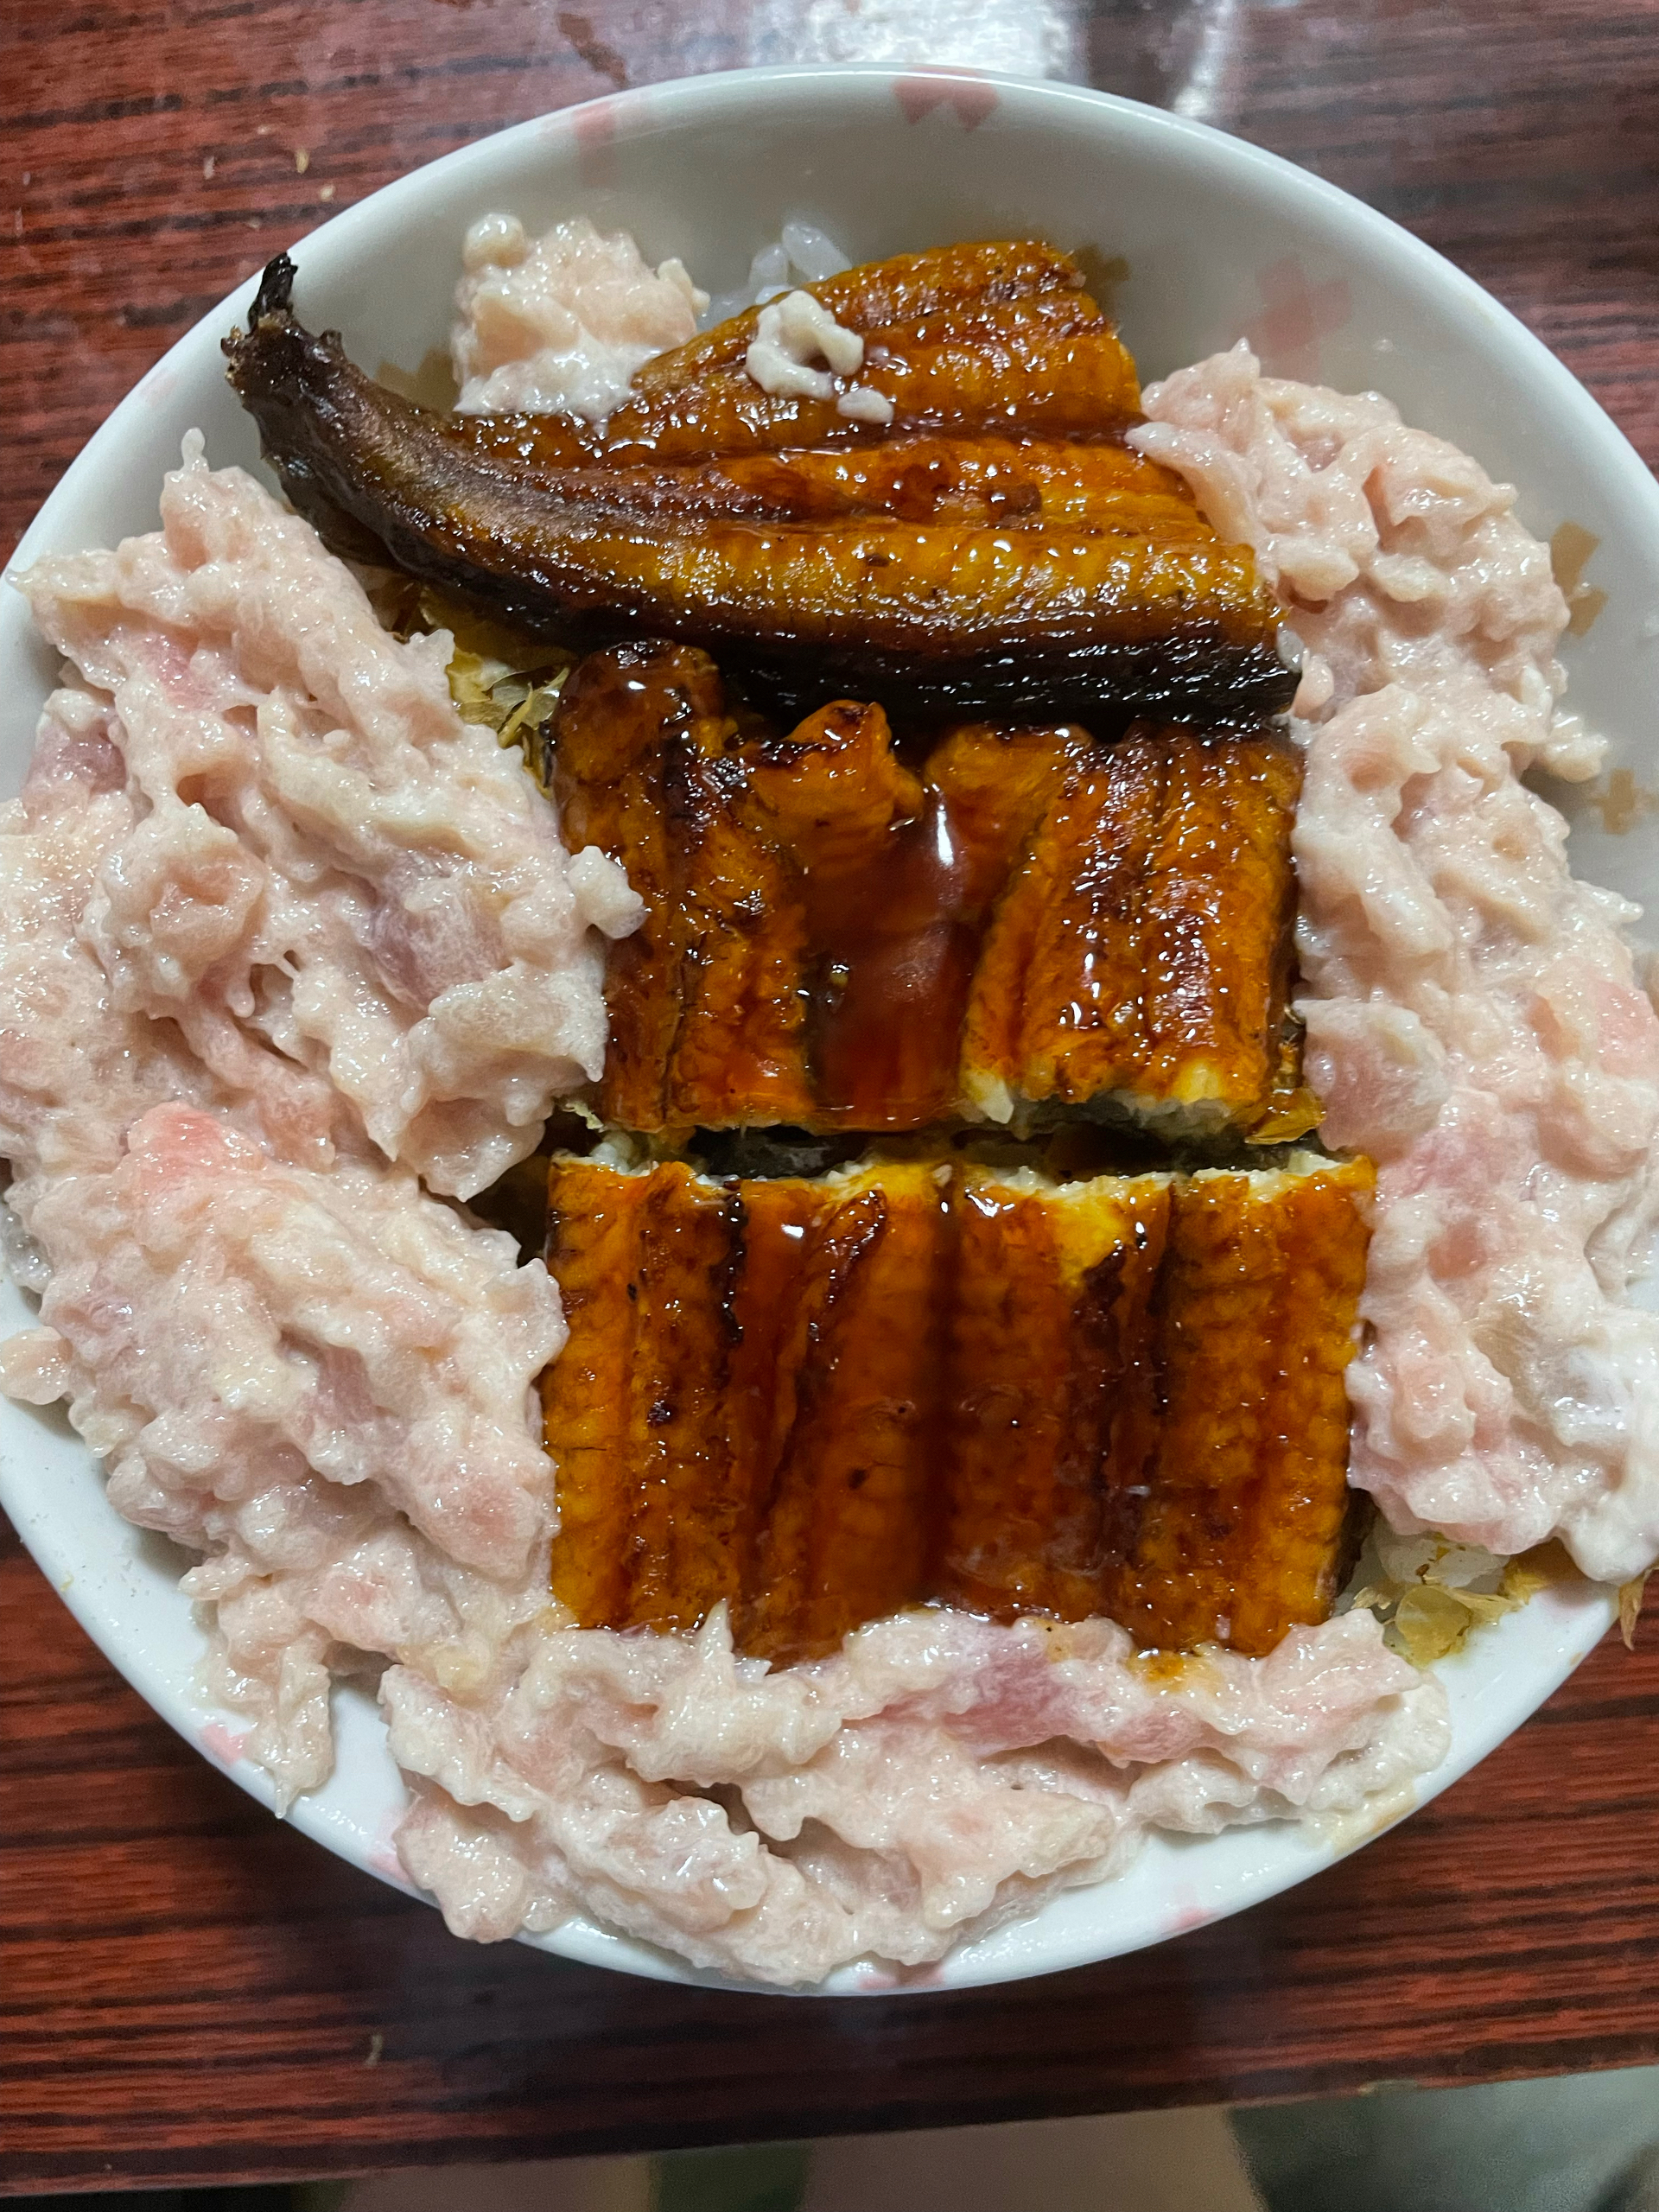 日式吞拿魚&曼魚便丼
懶人日式料理